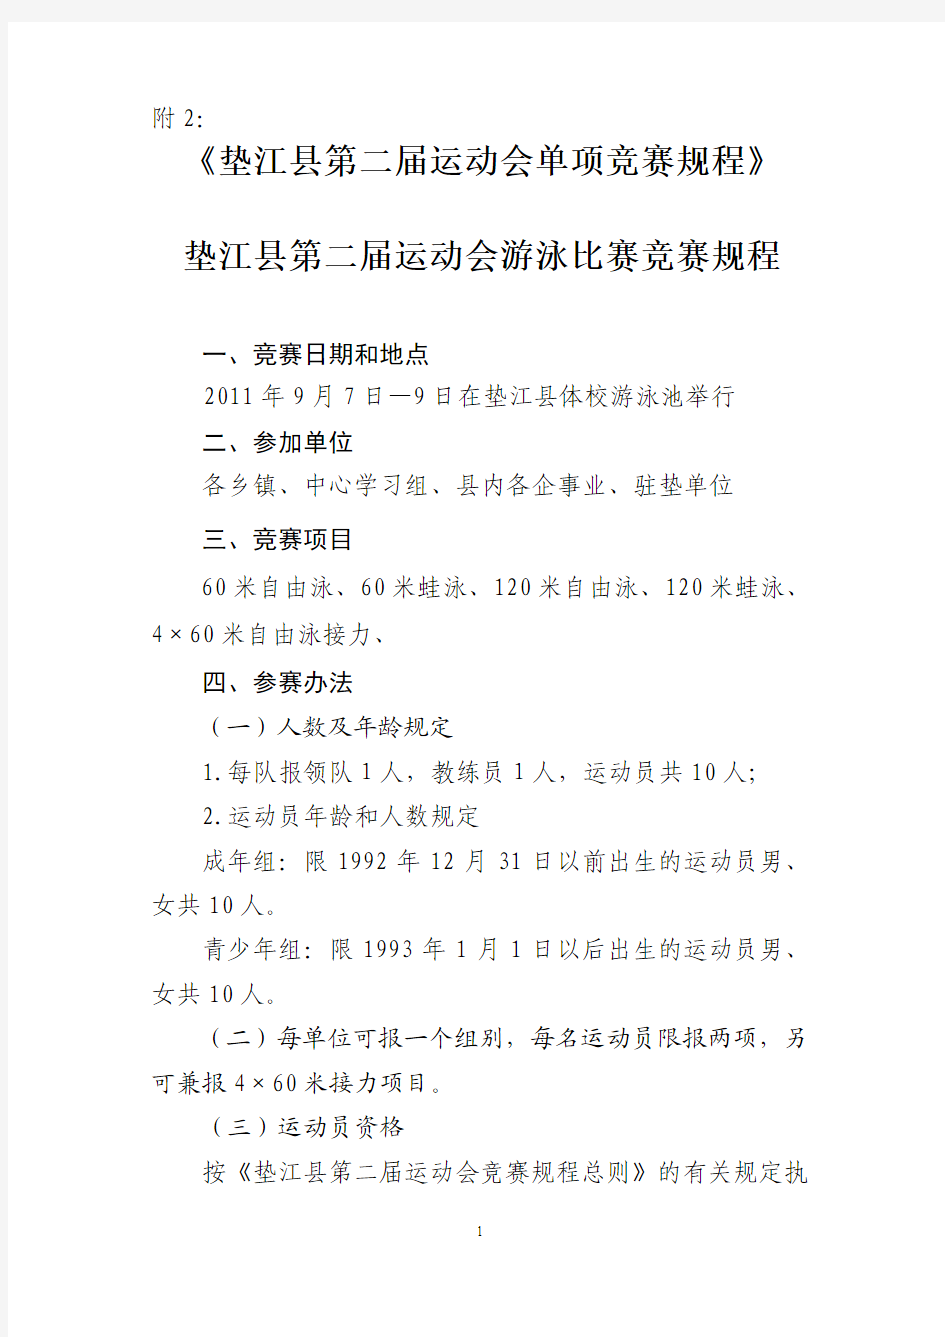 垫江县第二届运动会单项竞赛规程